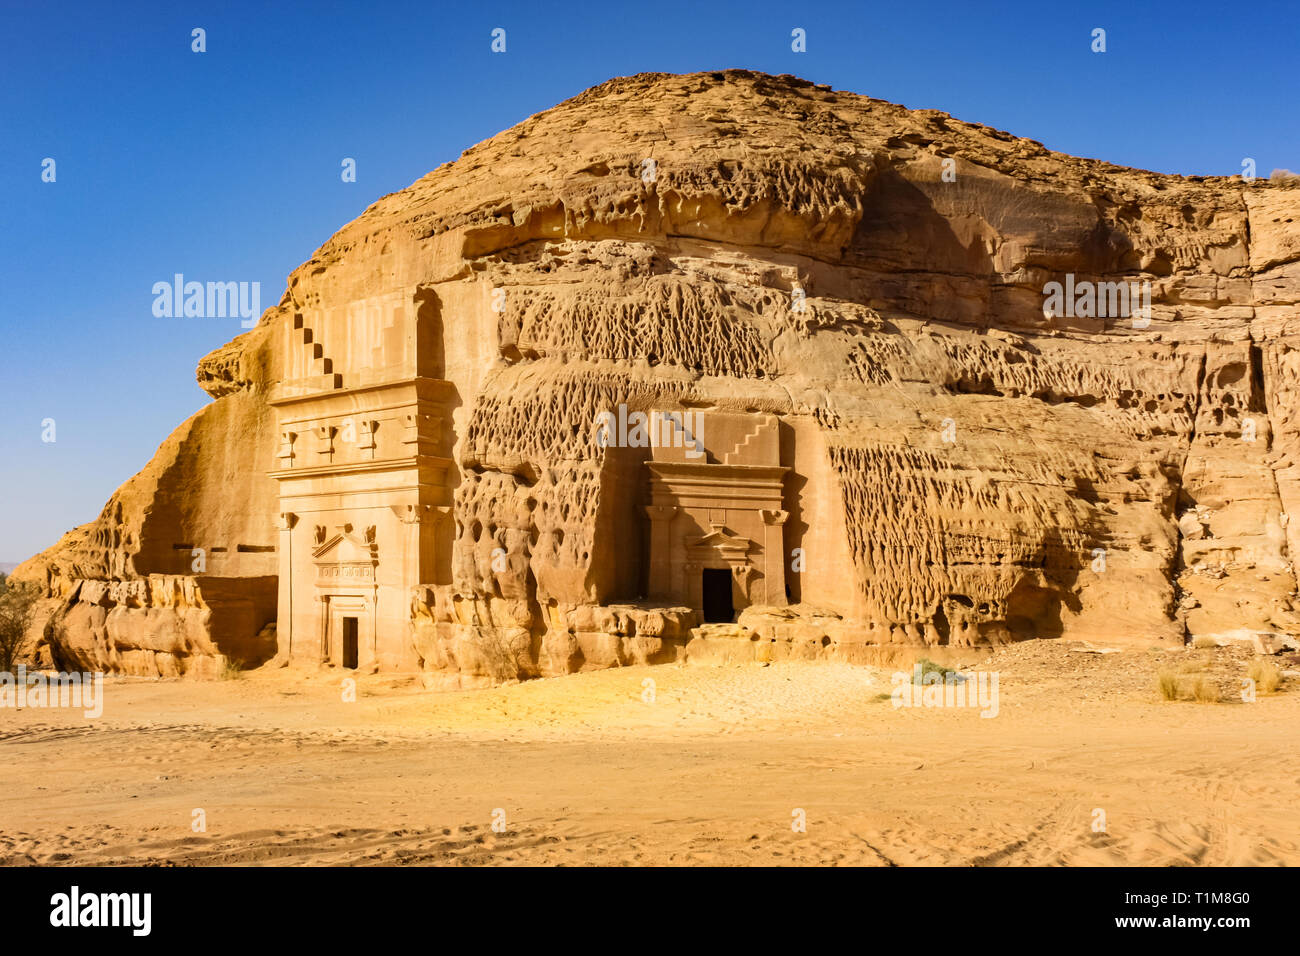 Rock-cut nabateo tumbas de Mada'en venta, un sitio del patrimonio mundial de la UNESCO en Arabia Saudita. Foto de stock